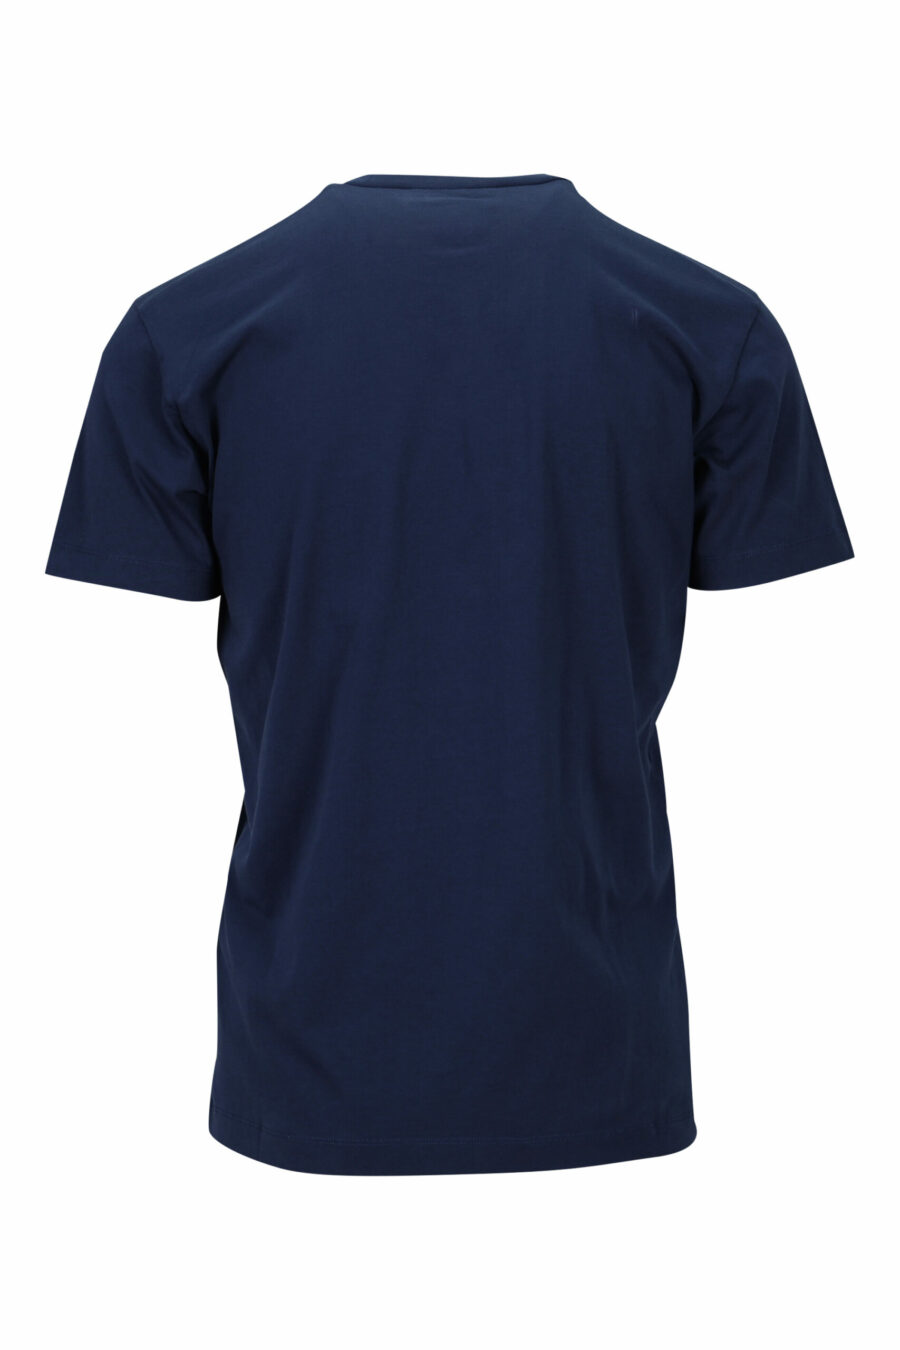 Camiseta azul oscuro con maxilogo "ceresio 9, milano" - 8054148504915 1 scaled